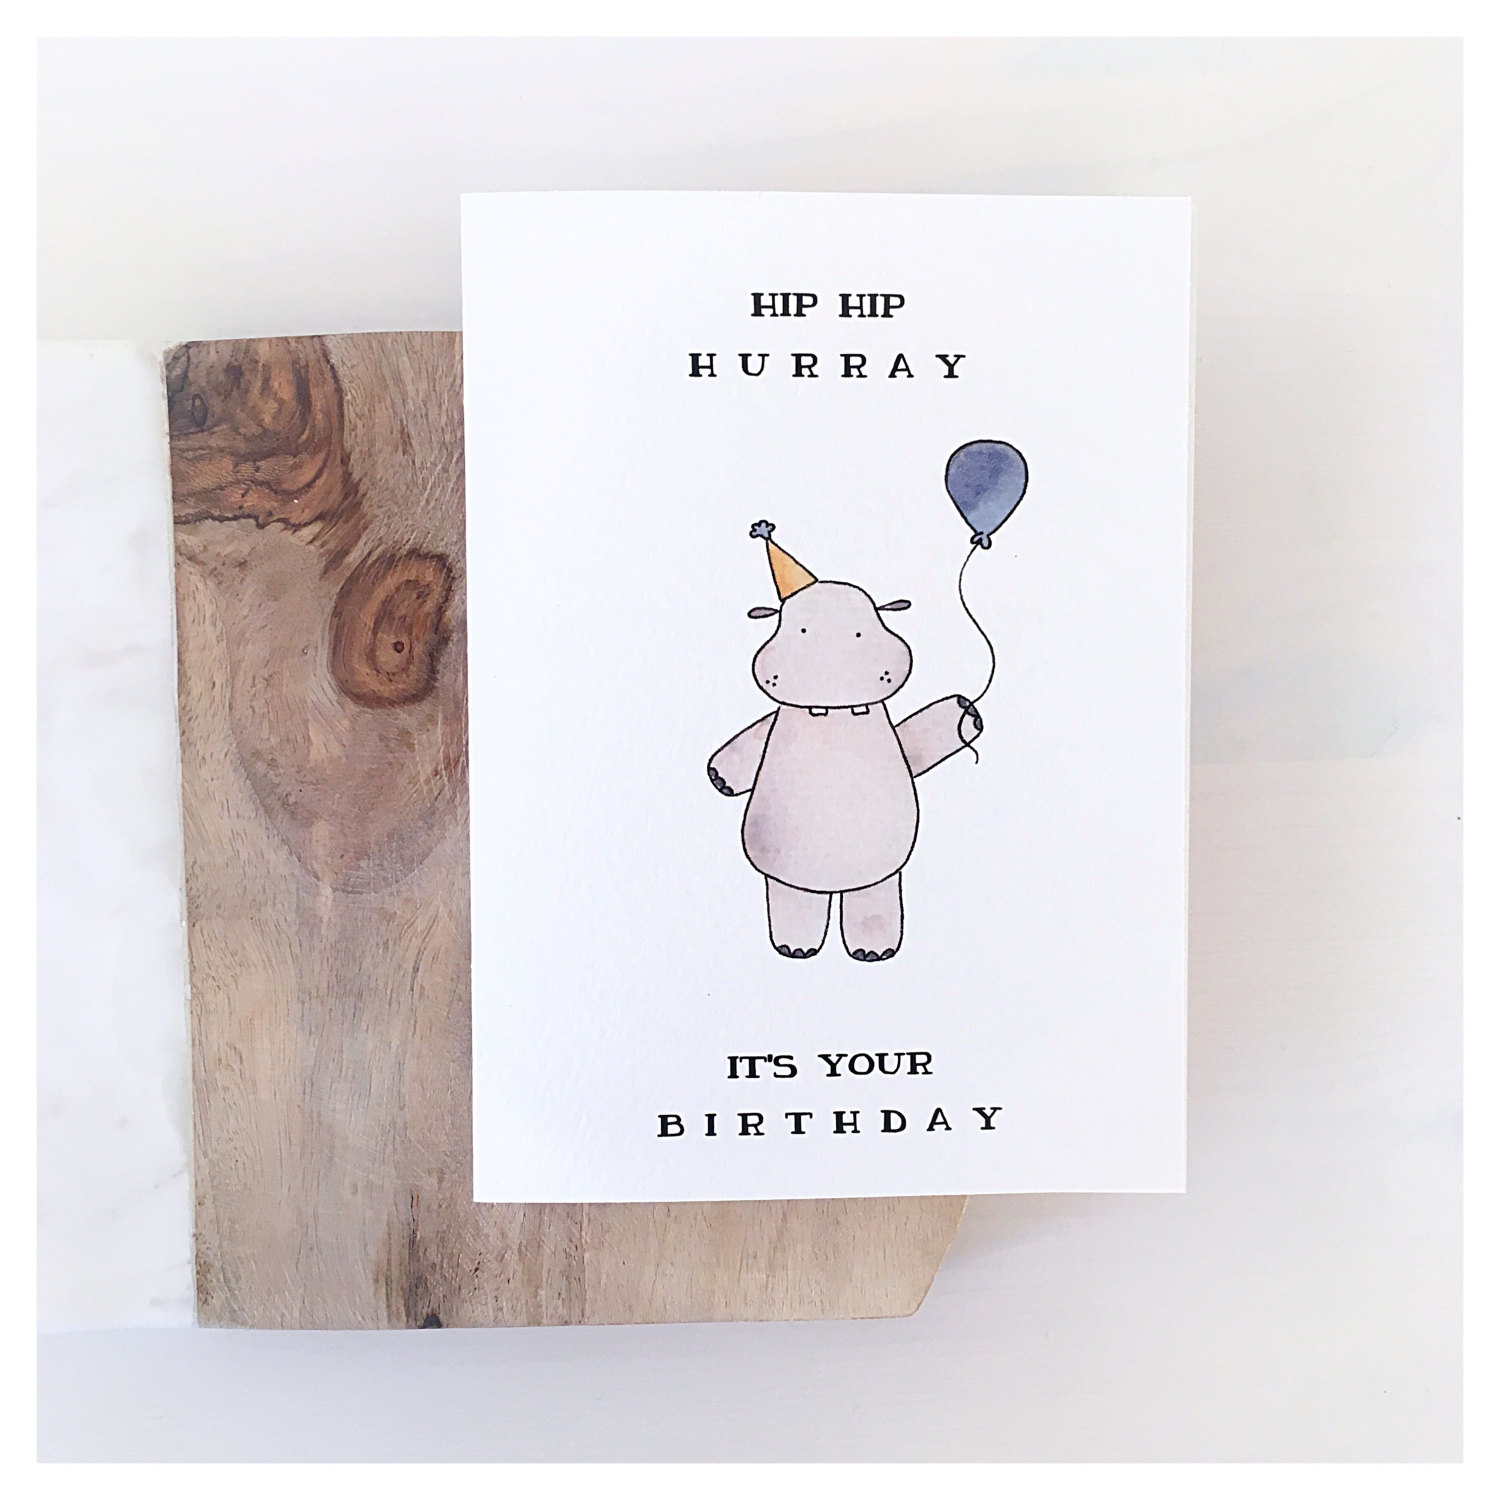 Hippo Card // birthday card, birthday greeting card, funny birthday card, birthday pun ...